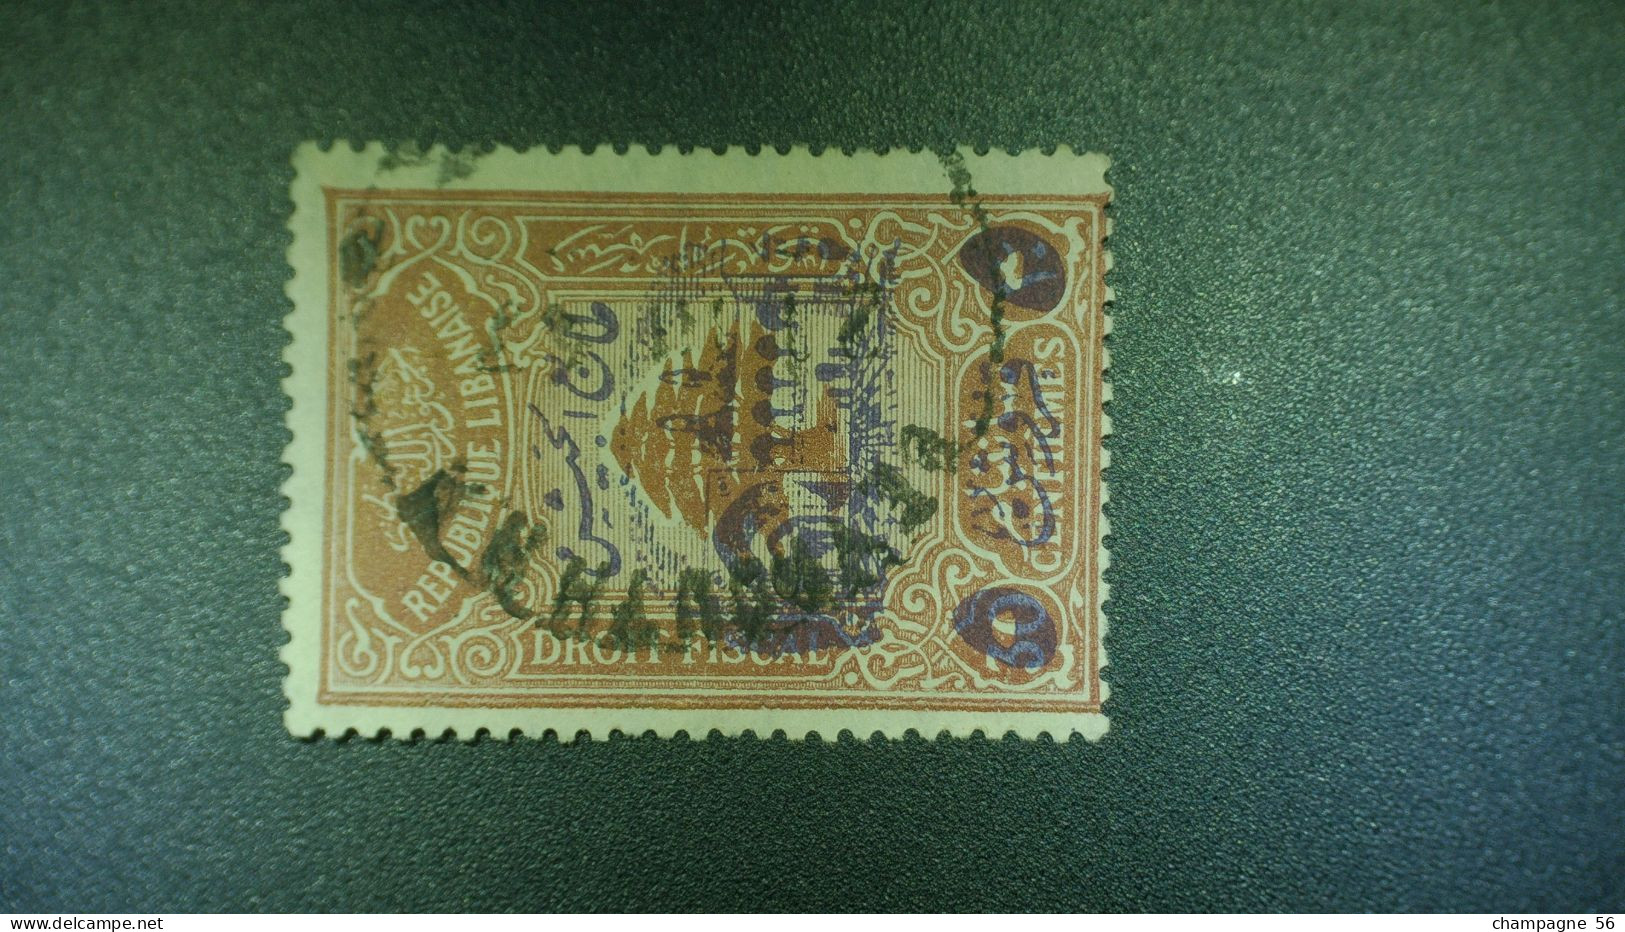 VARIÉTÉS 1945  N° 197B  TIMBRE FISCAUX  5 PI S 30 C BRUN OBLITÉRÉ - Postage Due